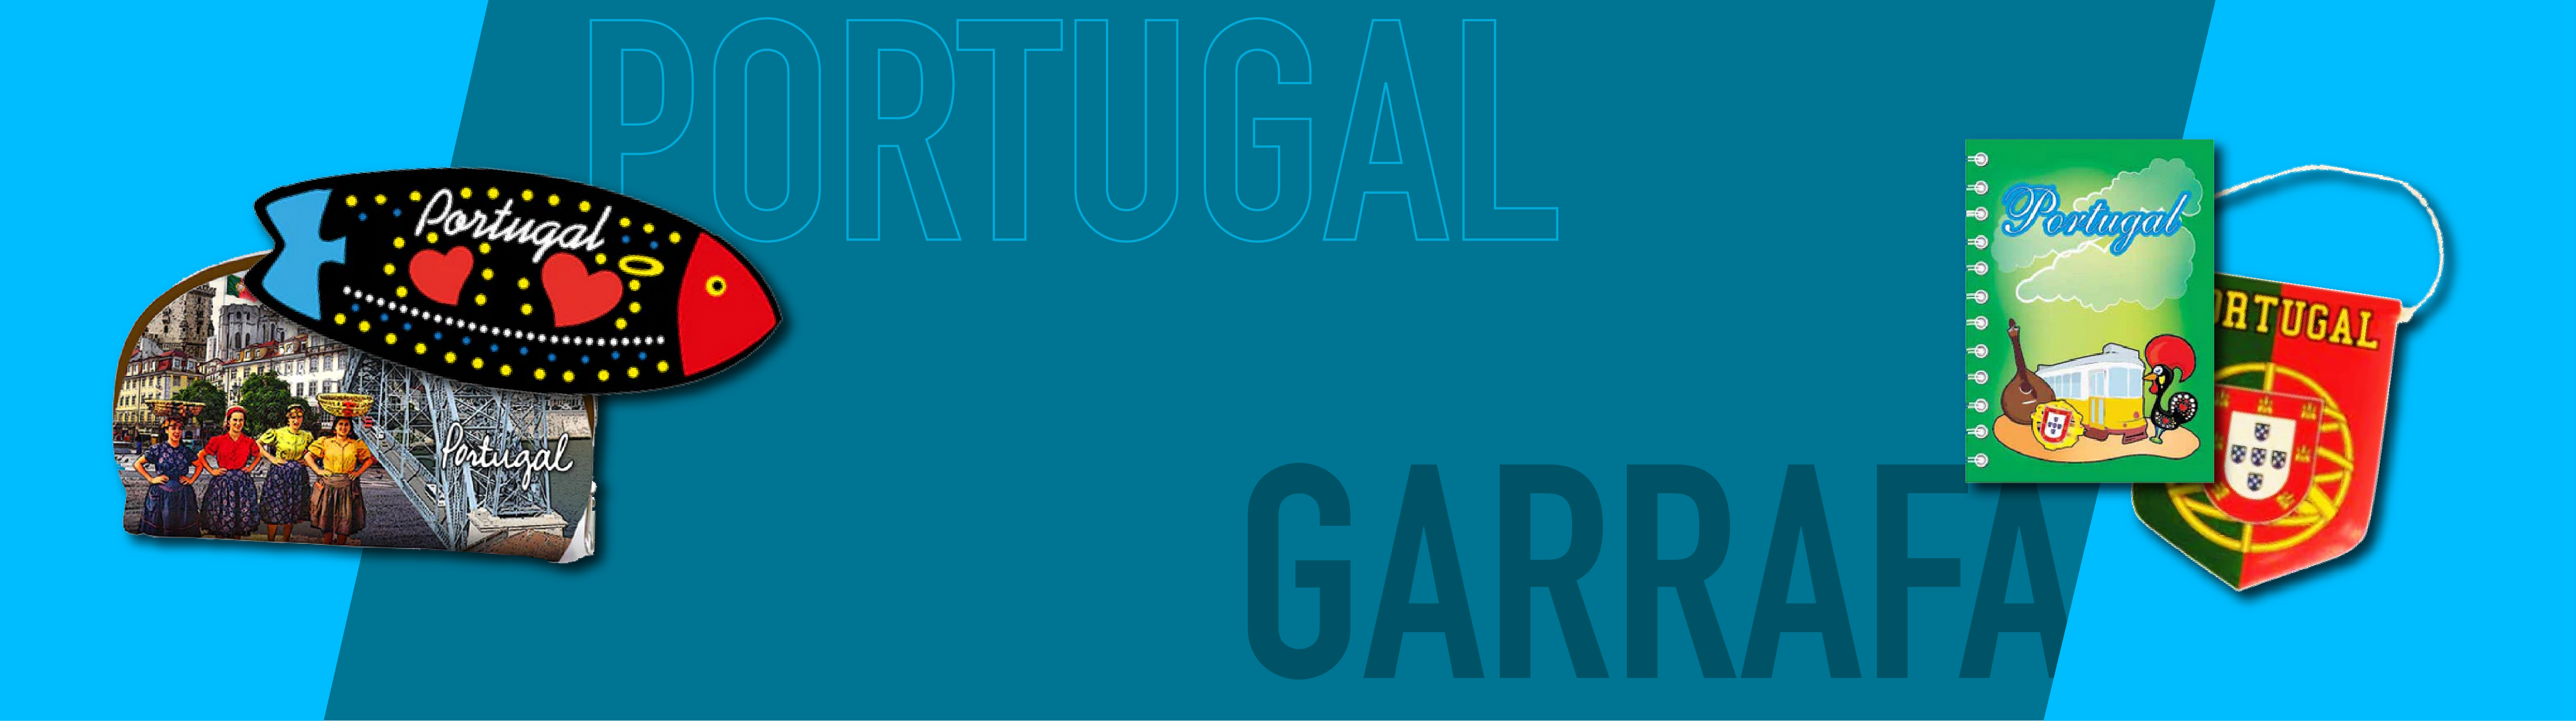 PORTUGAL - GARRAFA